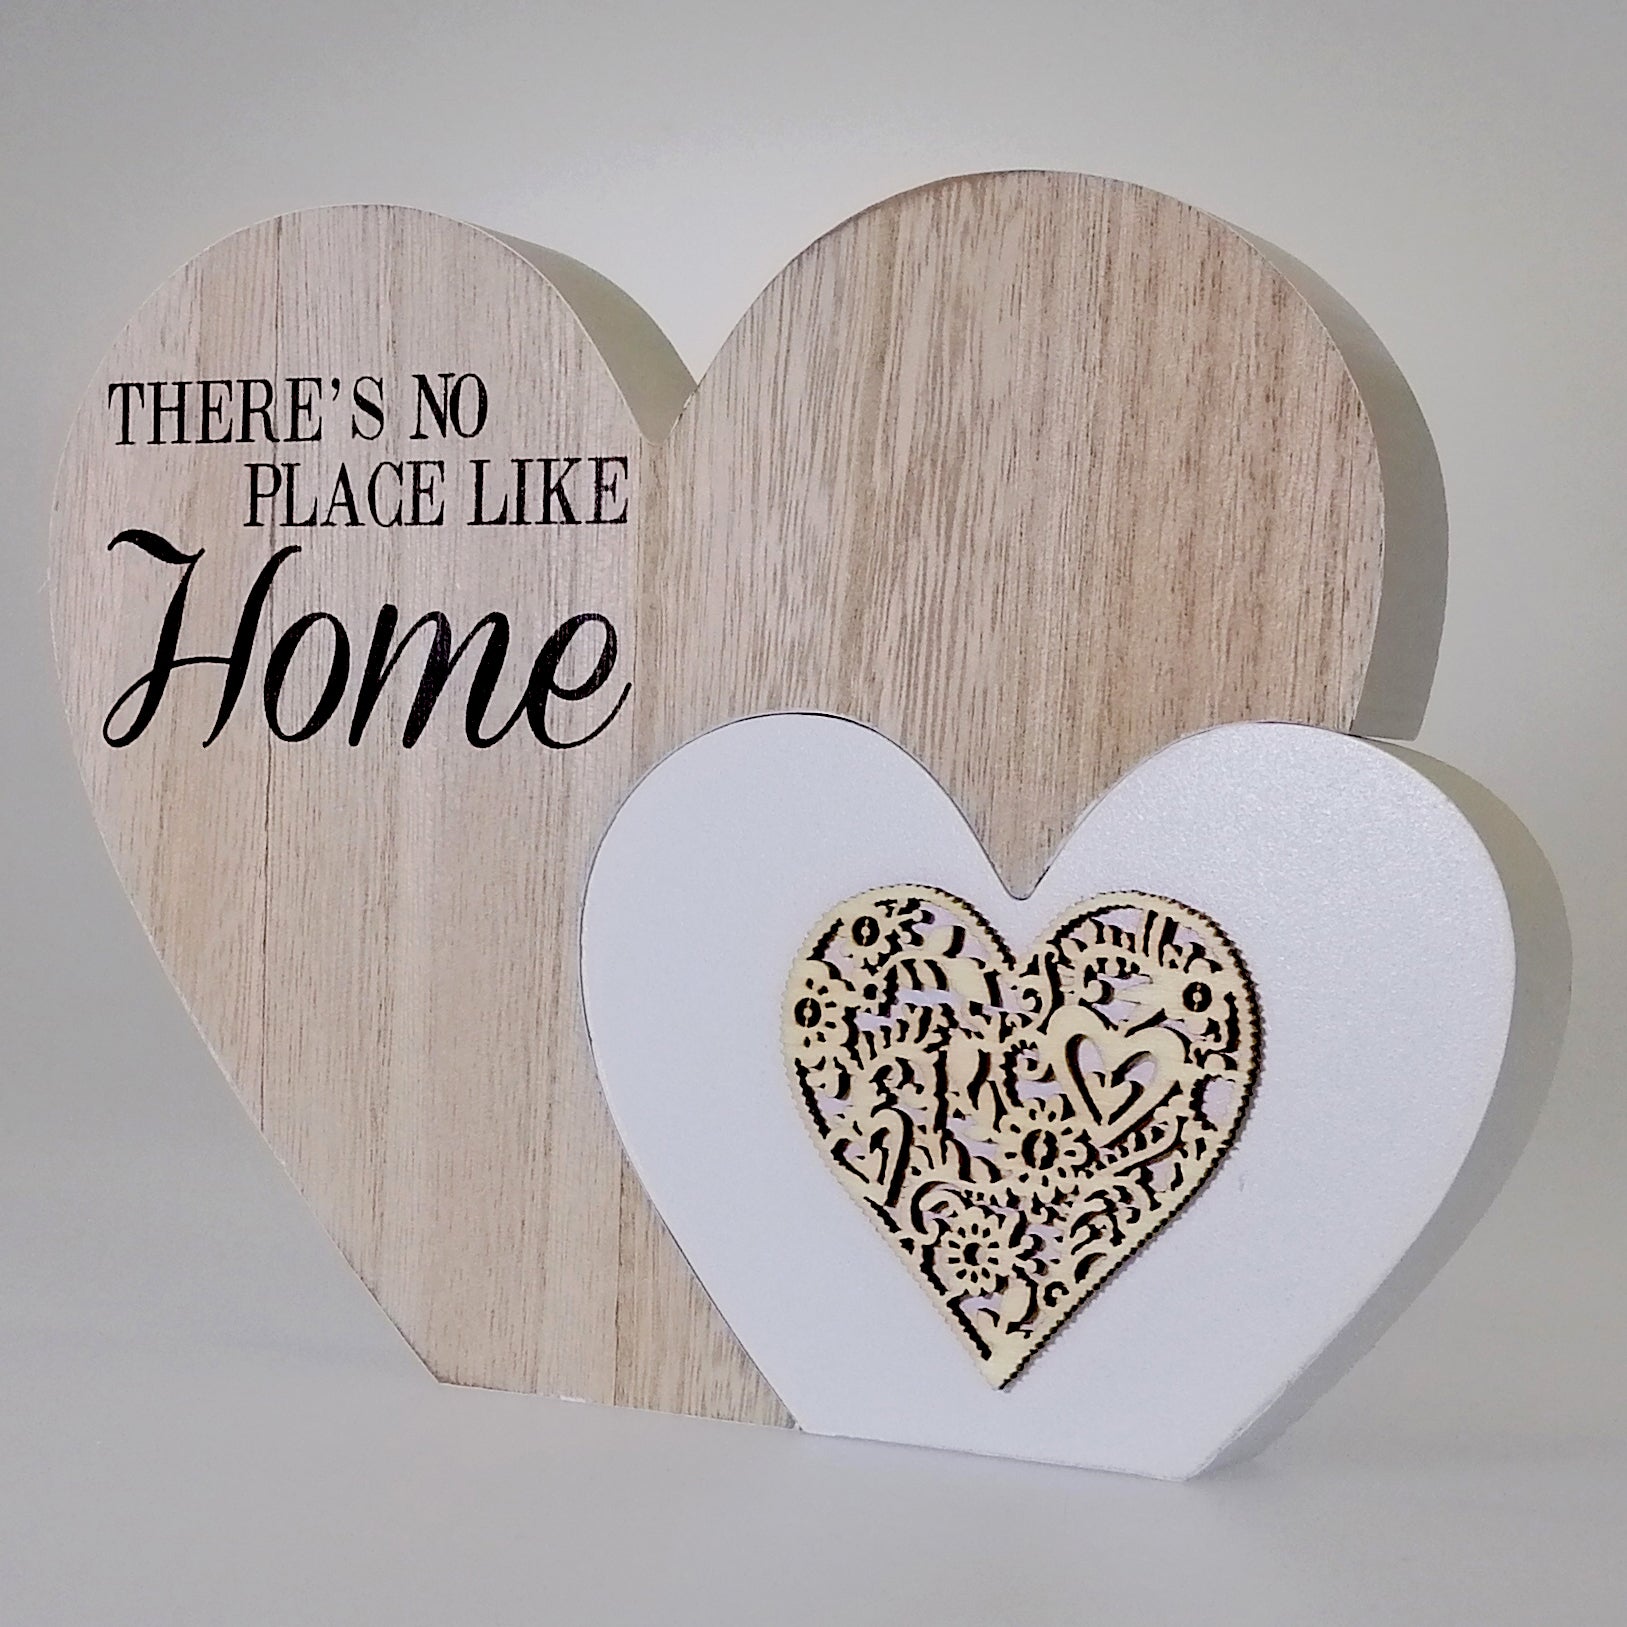 Home' Heart Plaque - 2 Piece